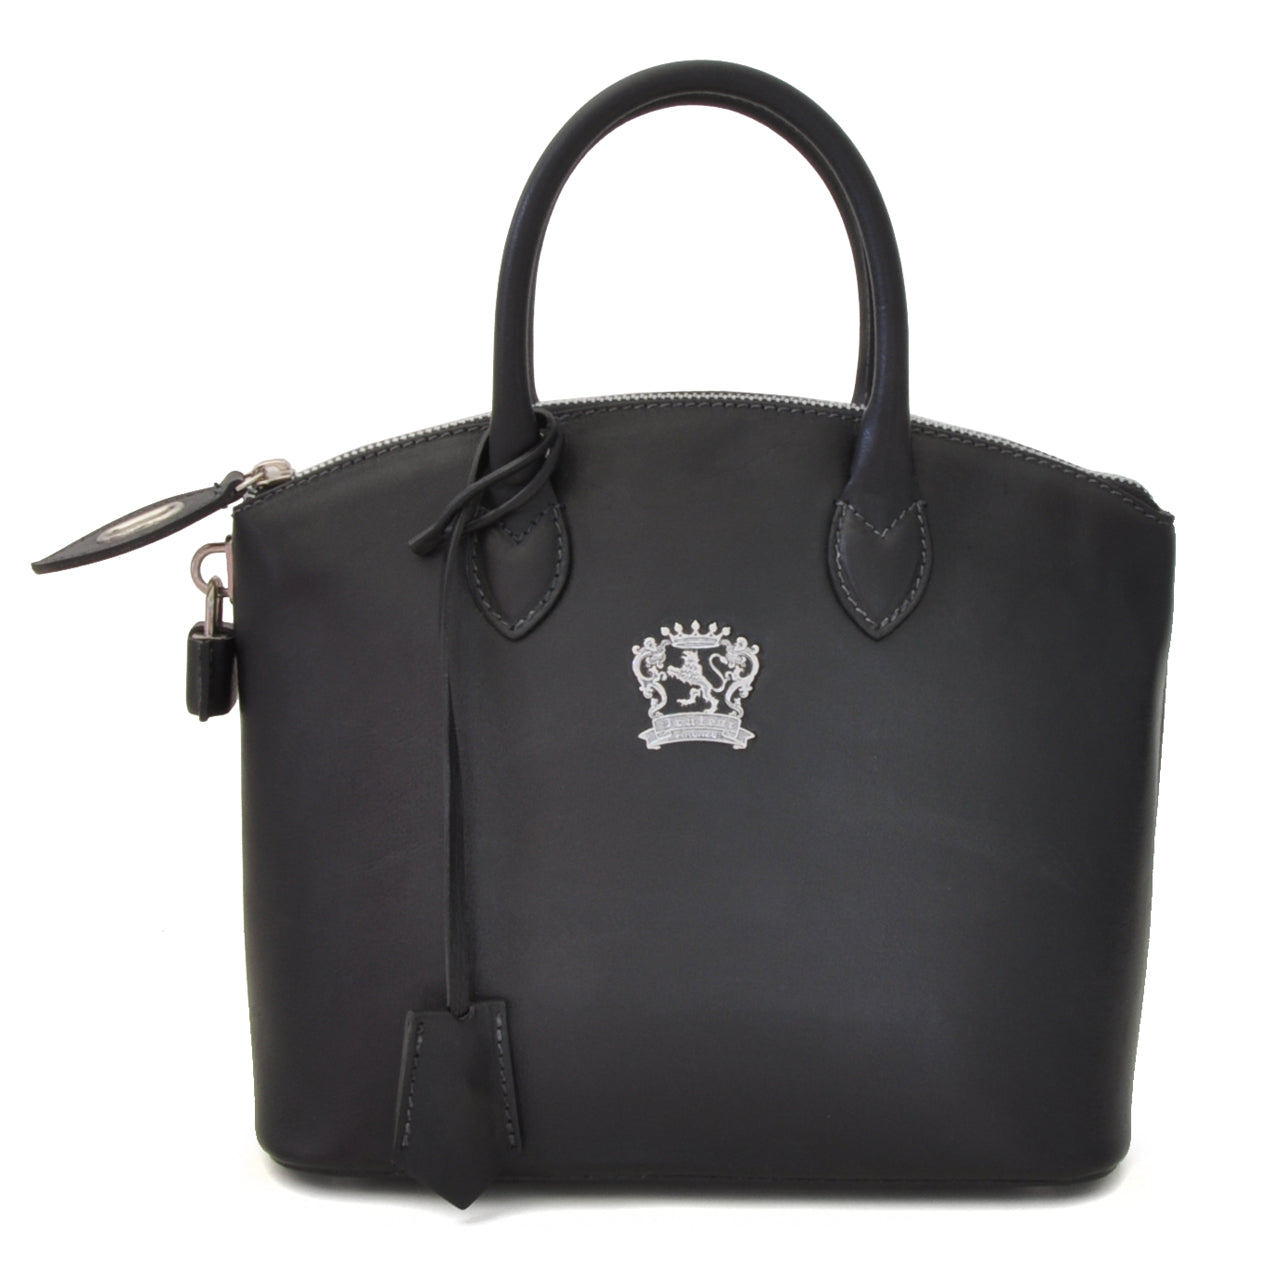 Pratesi Versilia Small Bruce Handbag in genuine Italian leather - Vegetable Tanned Italian Leather Black